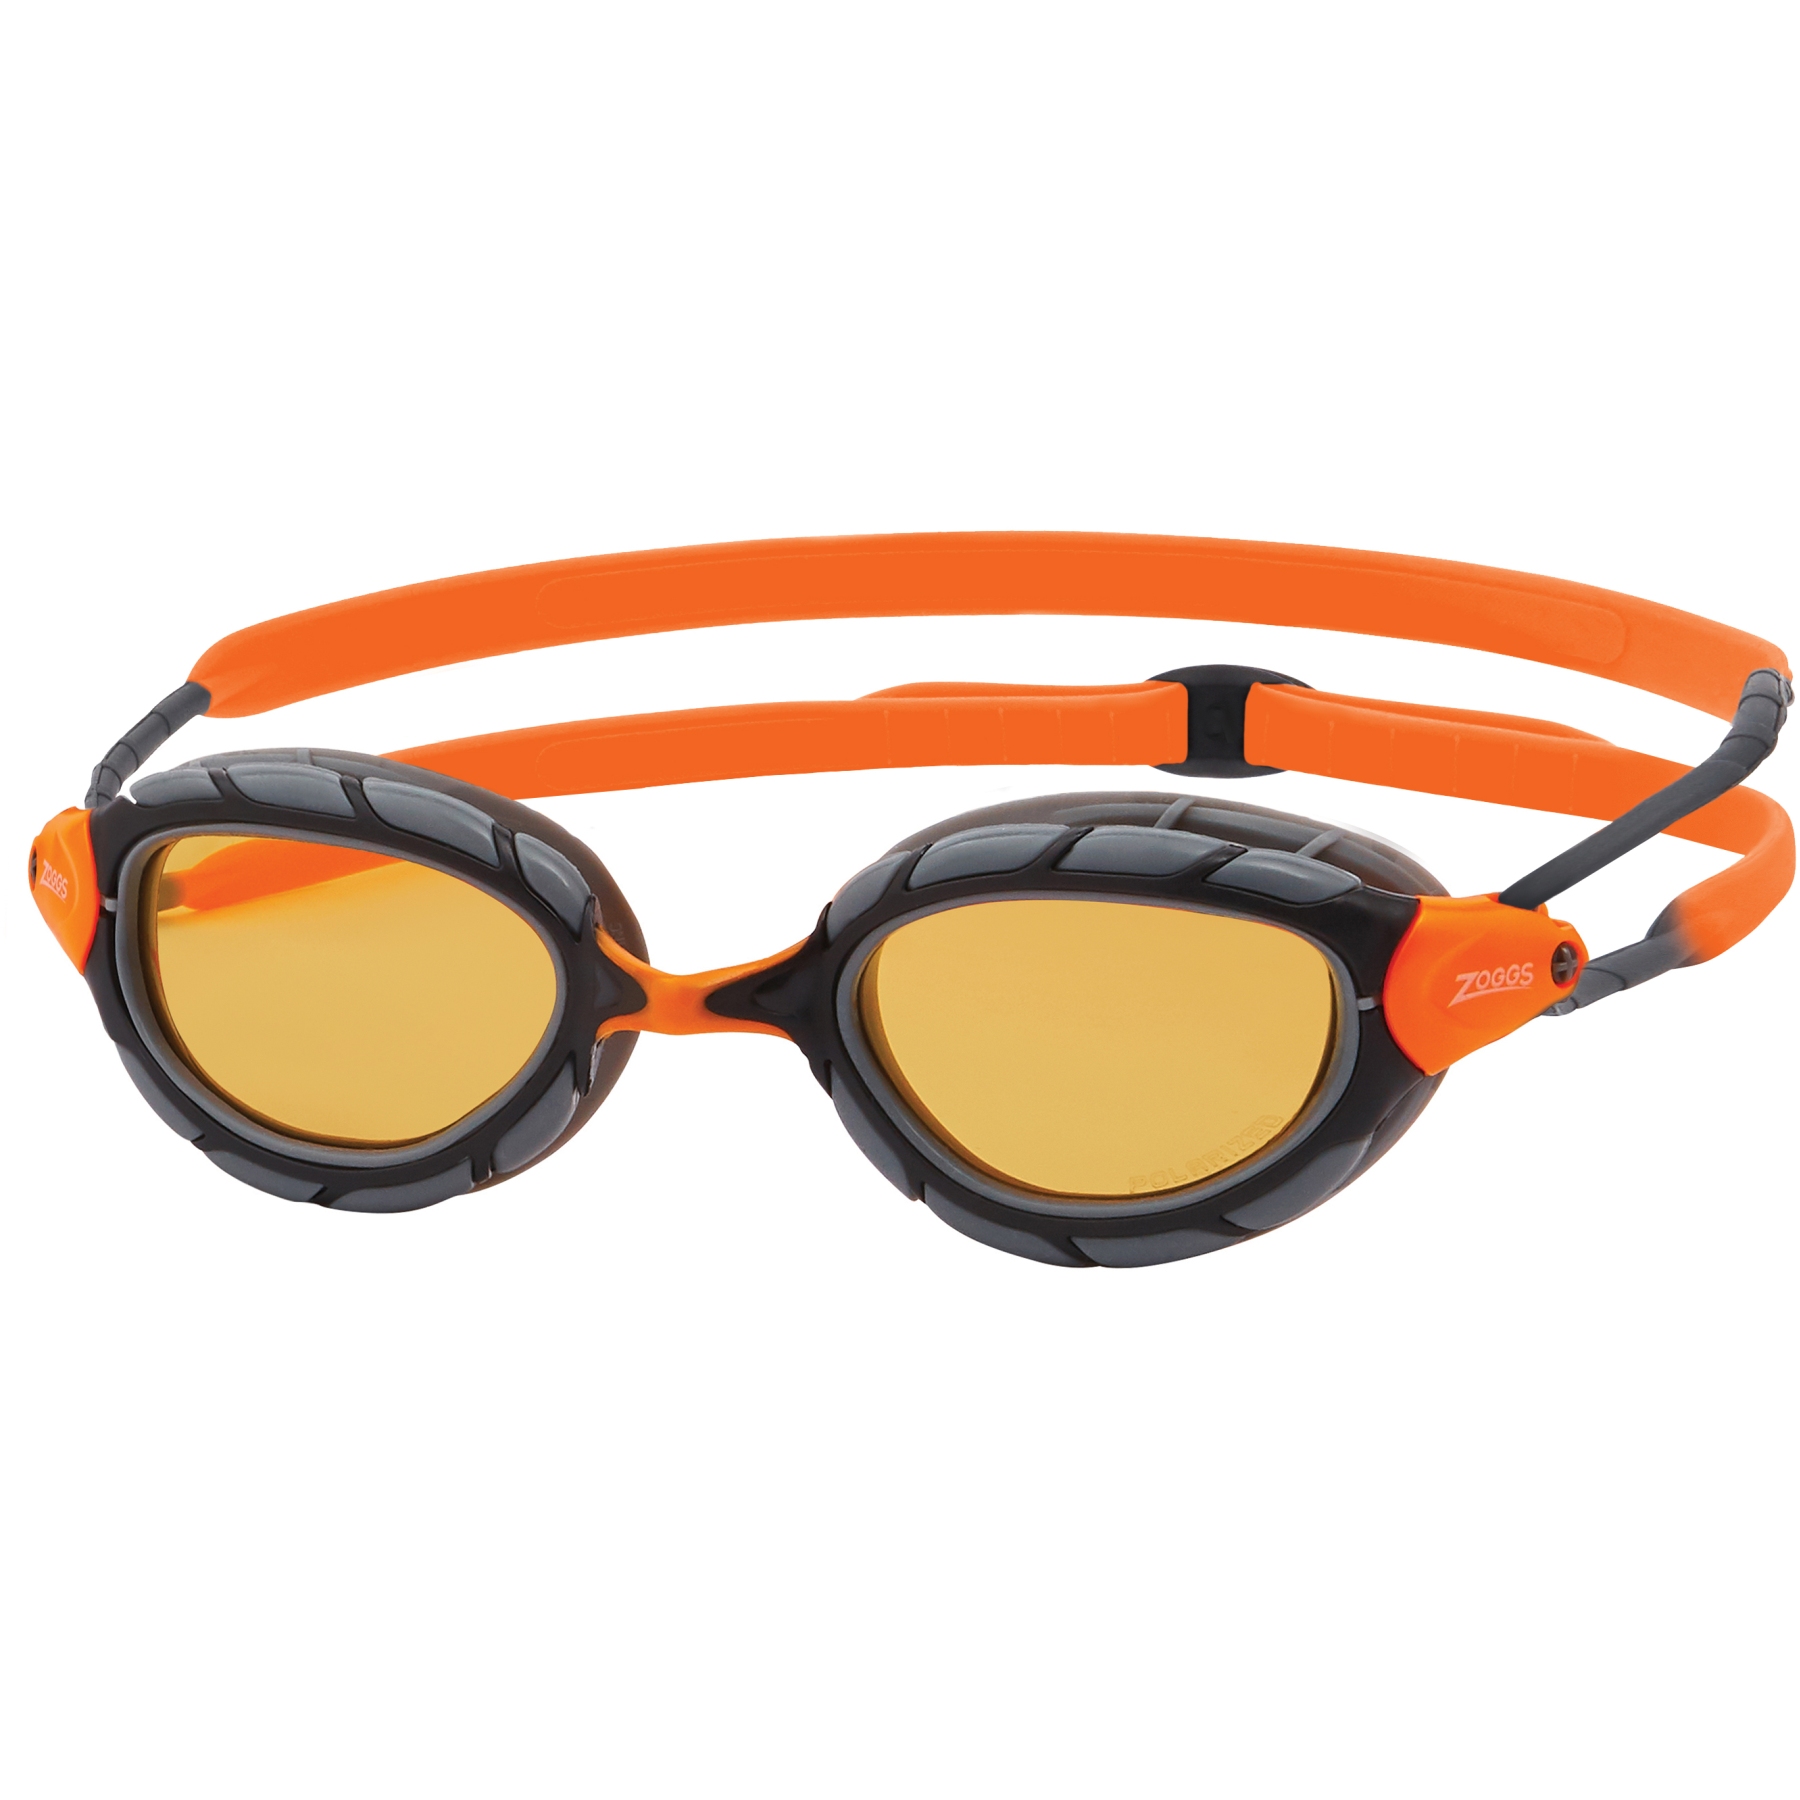 Immagine prodotto da Zoggs Occhialini Nuoto - Predator - Lenti Polarizzate Ultra : Copper - Taglia Regolare - Grigio/Arancione